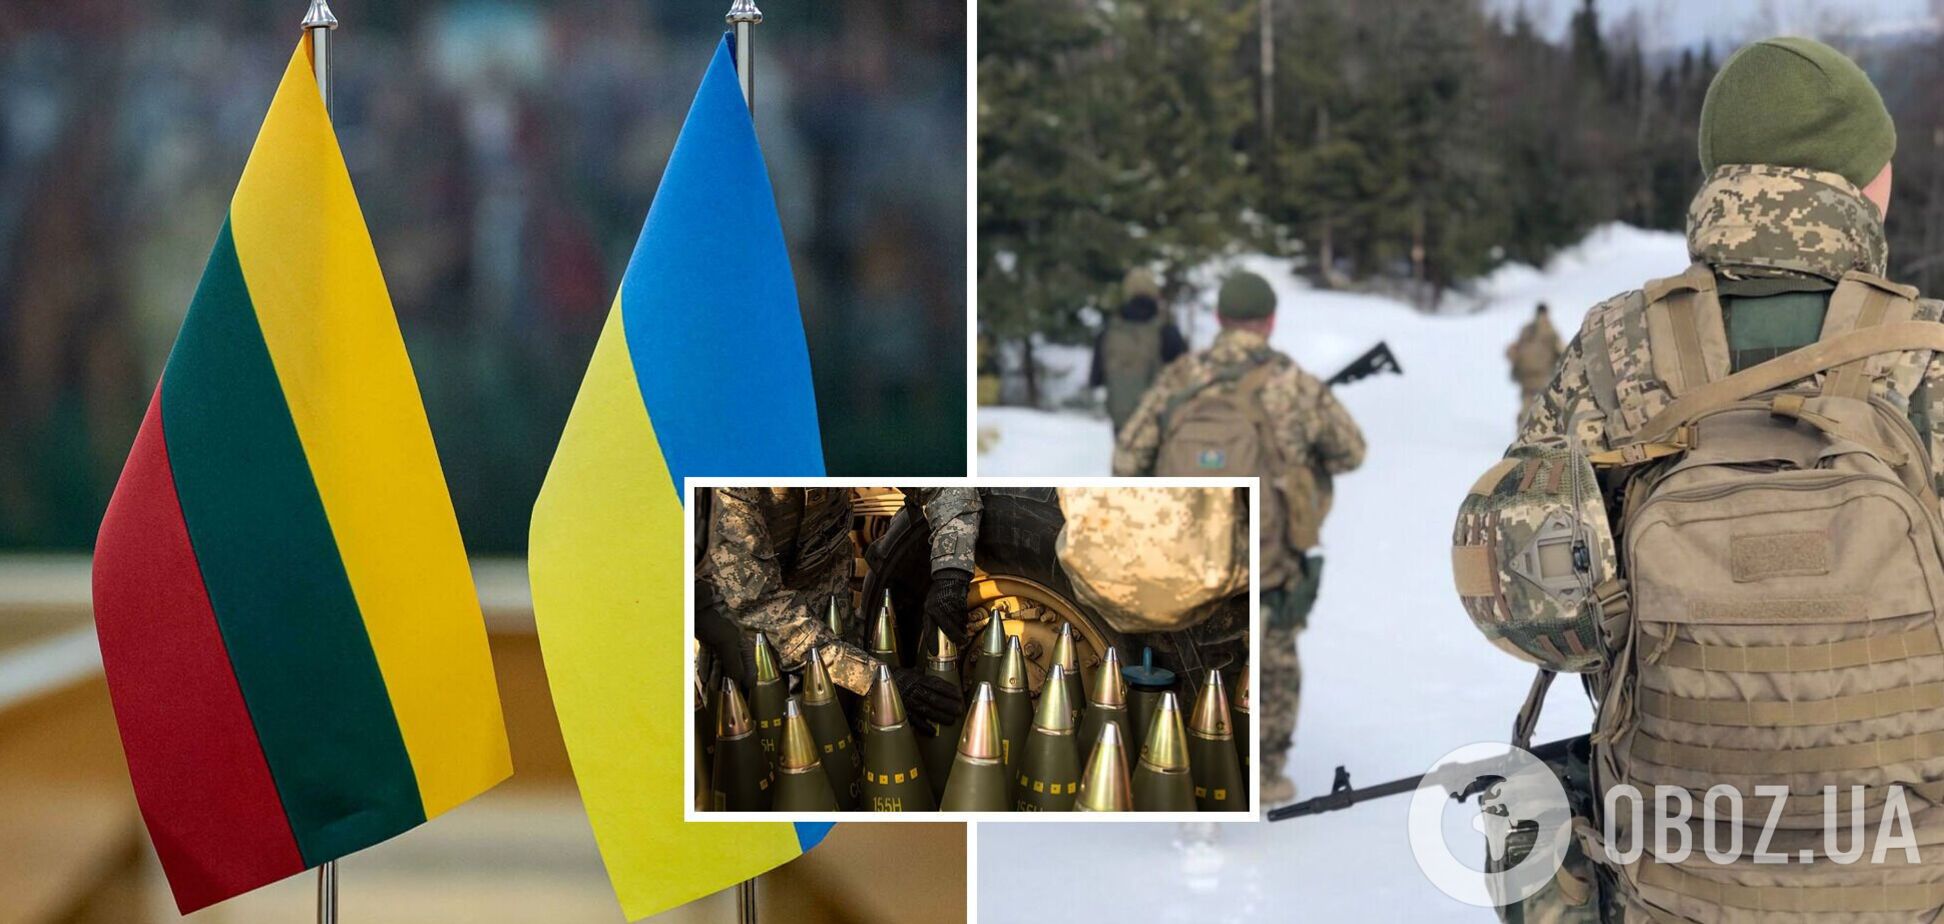 Литва відправляє Україні 155-мм боєприпаси – Міноборони